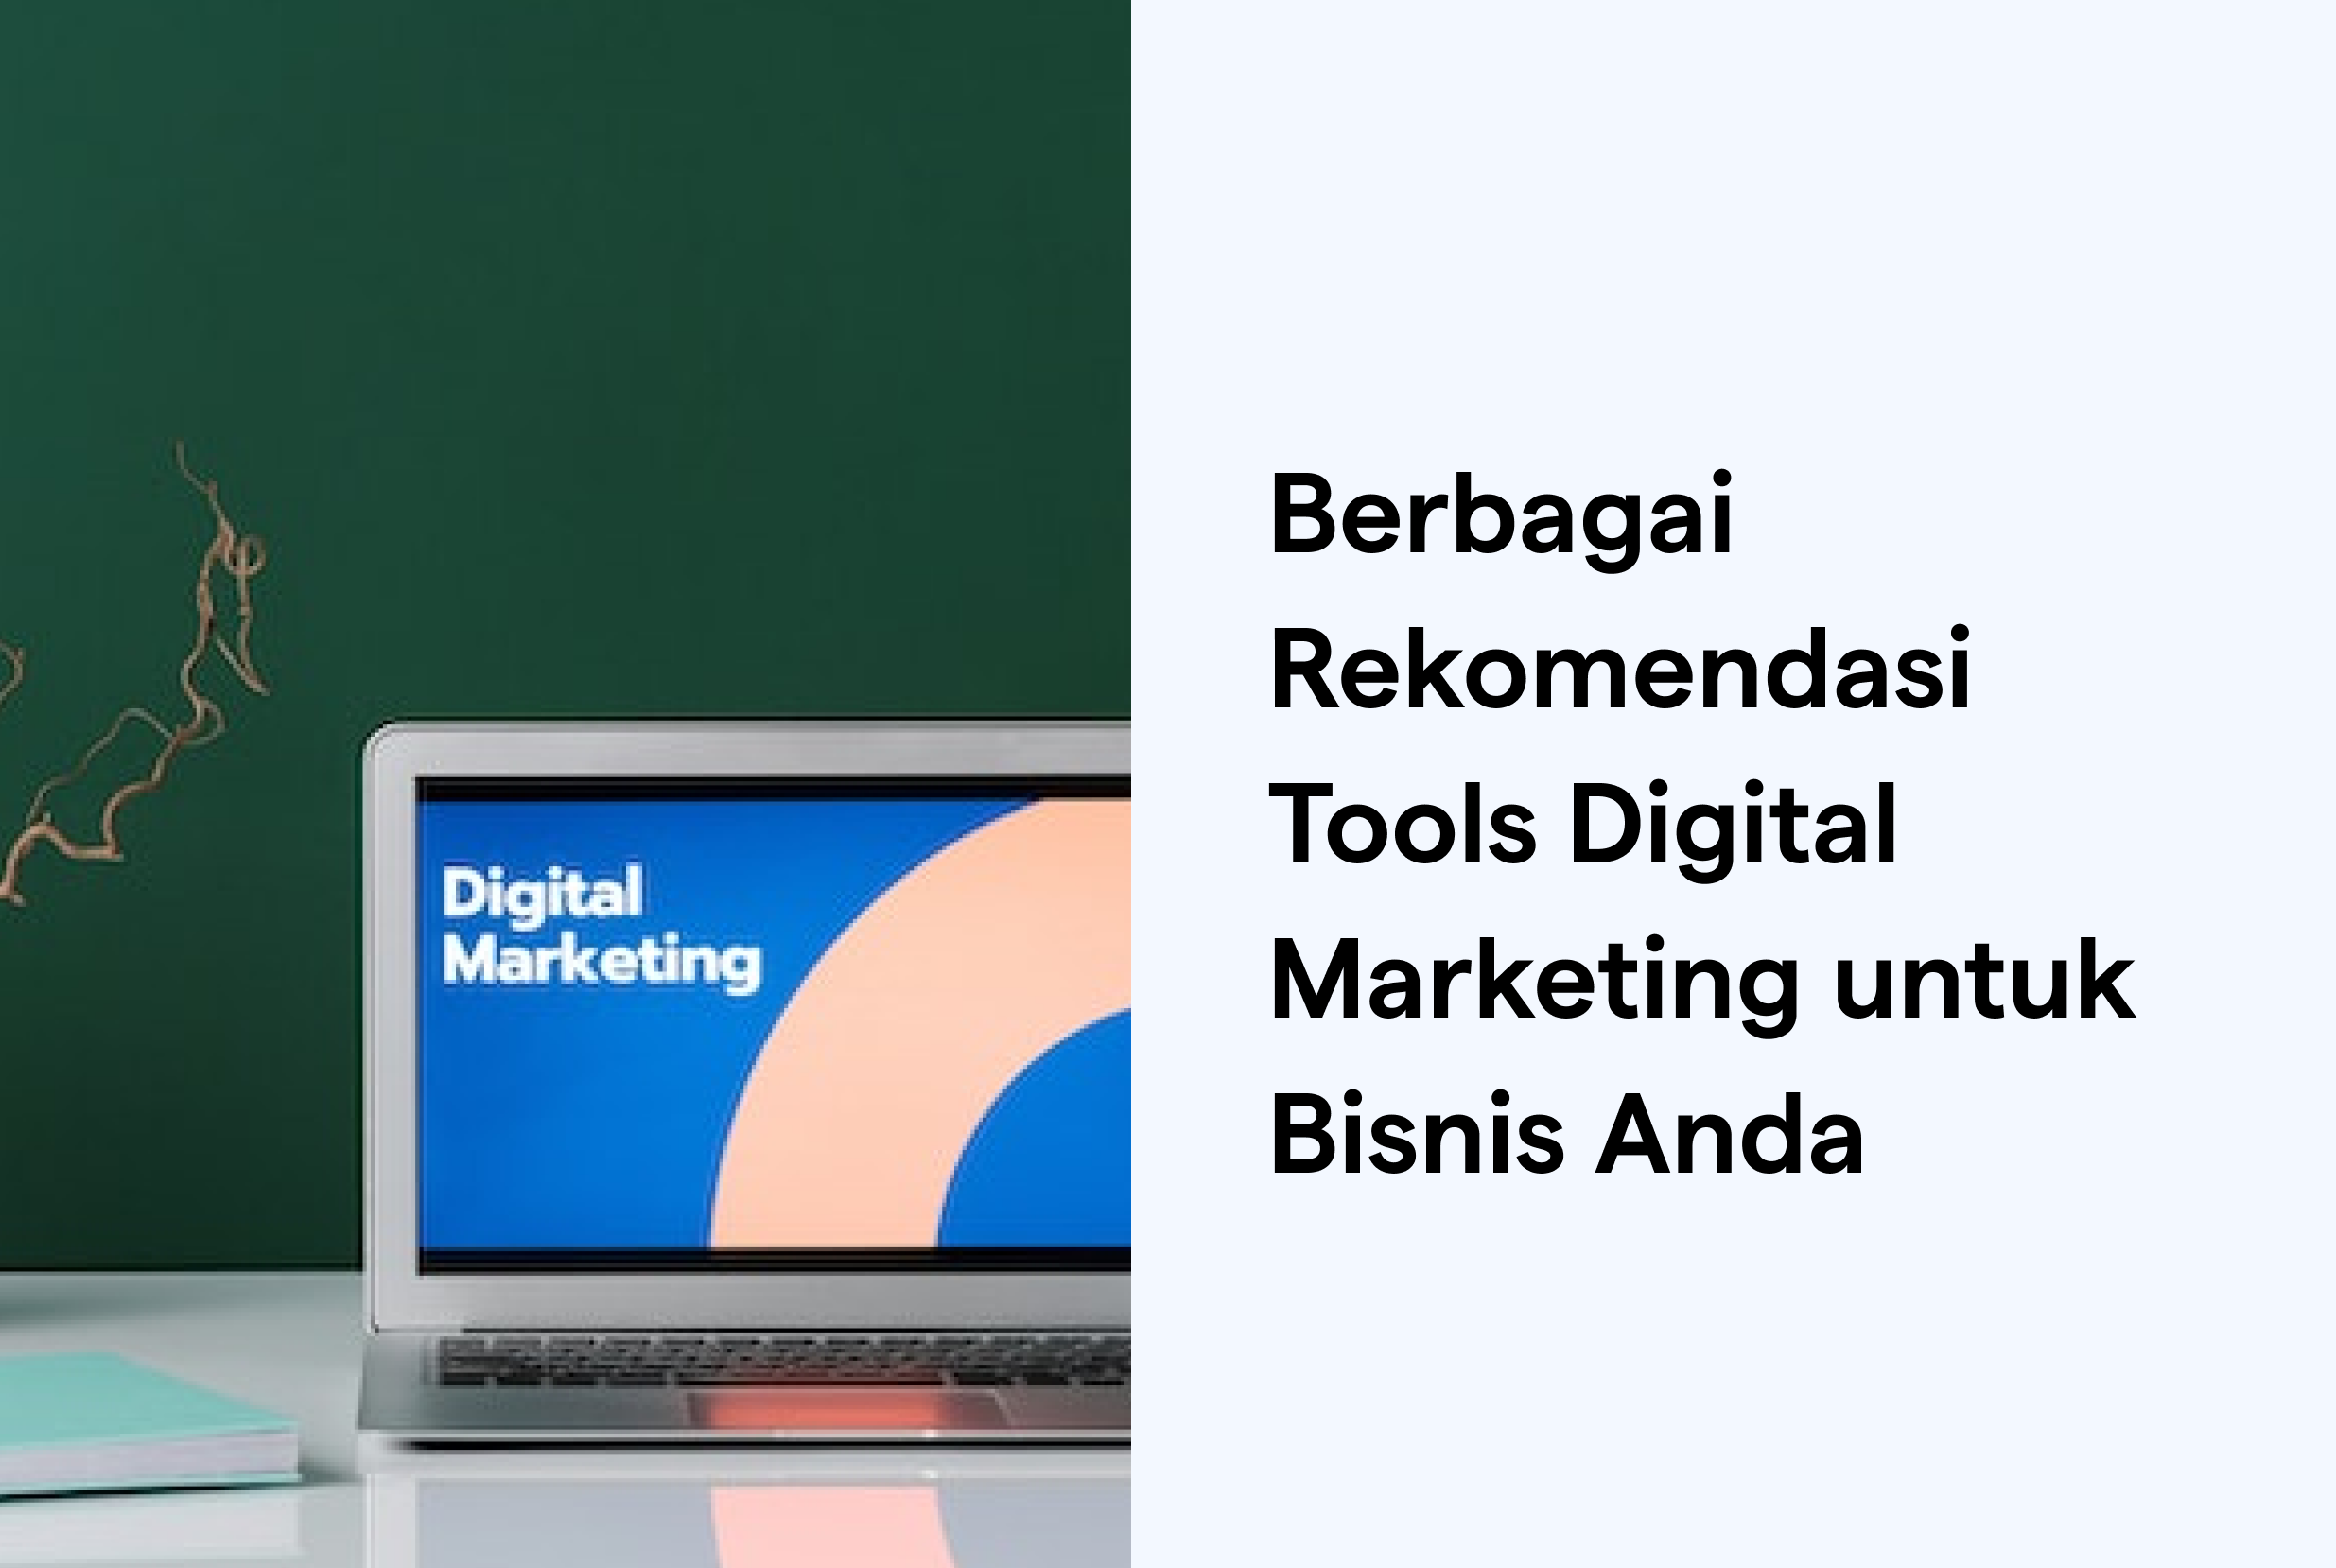 Berbagai Rekomendasi Tools Digital Marketing untuk Bisnis Anda